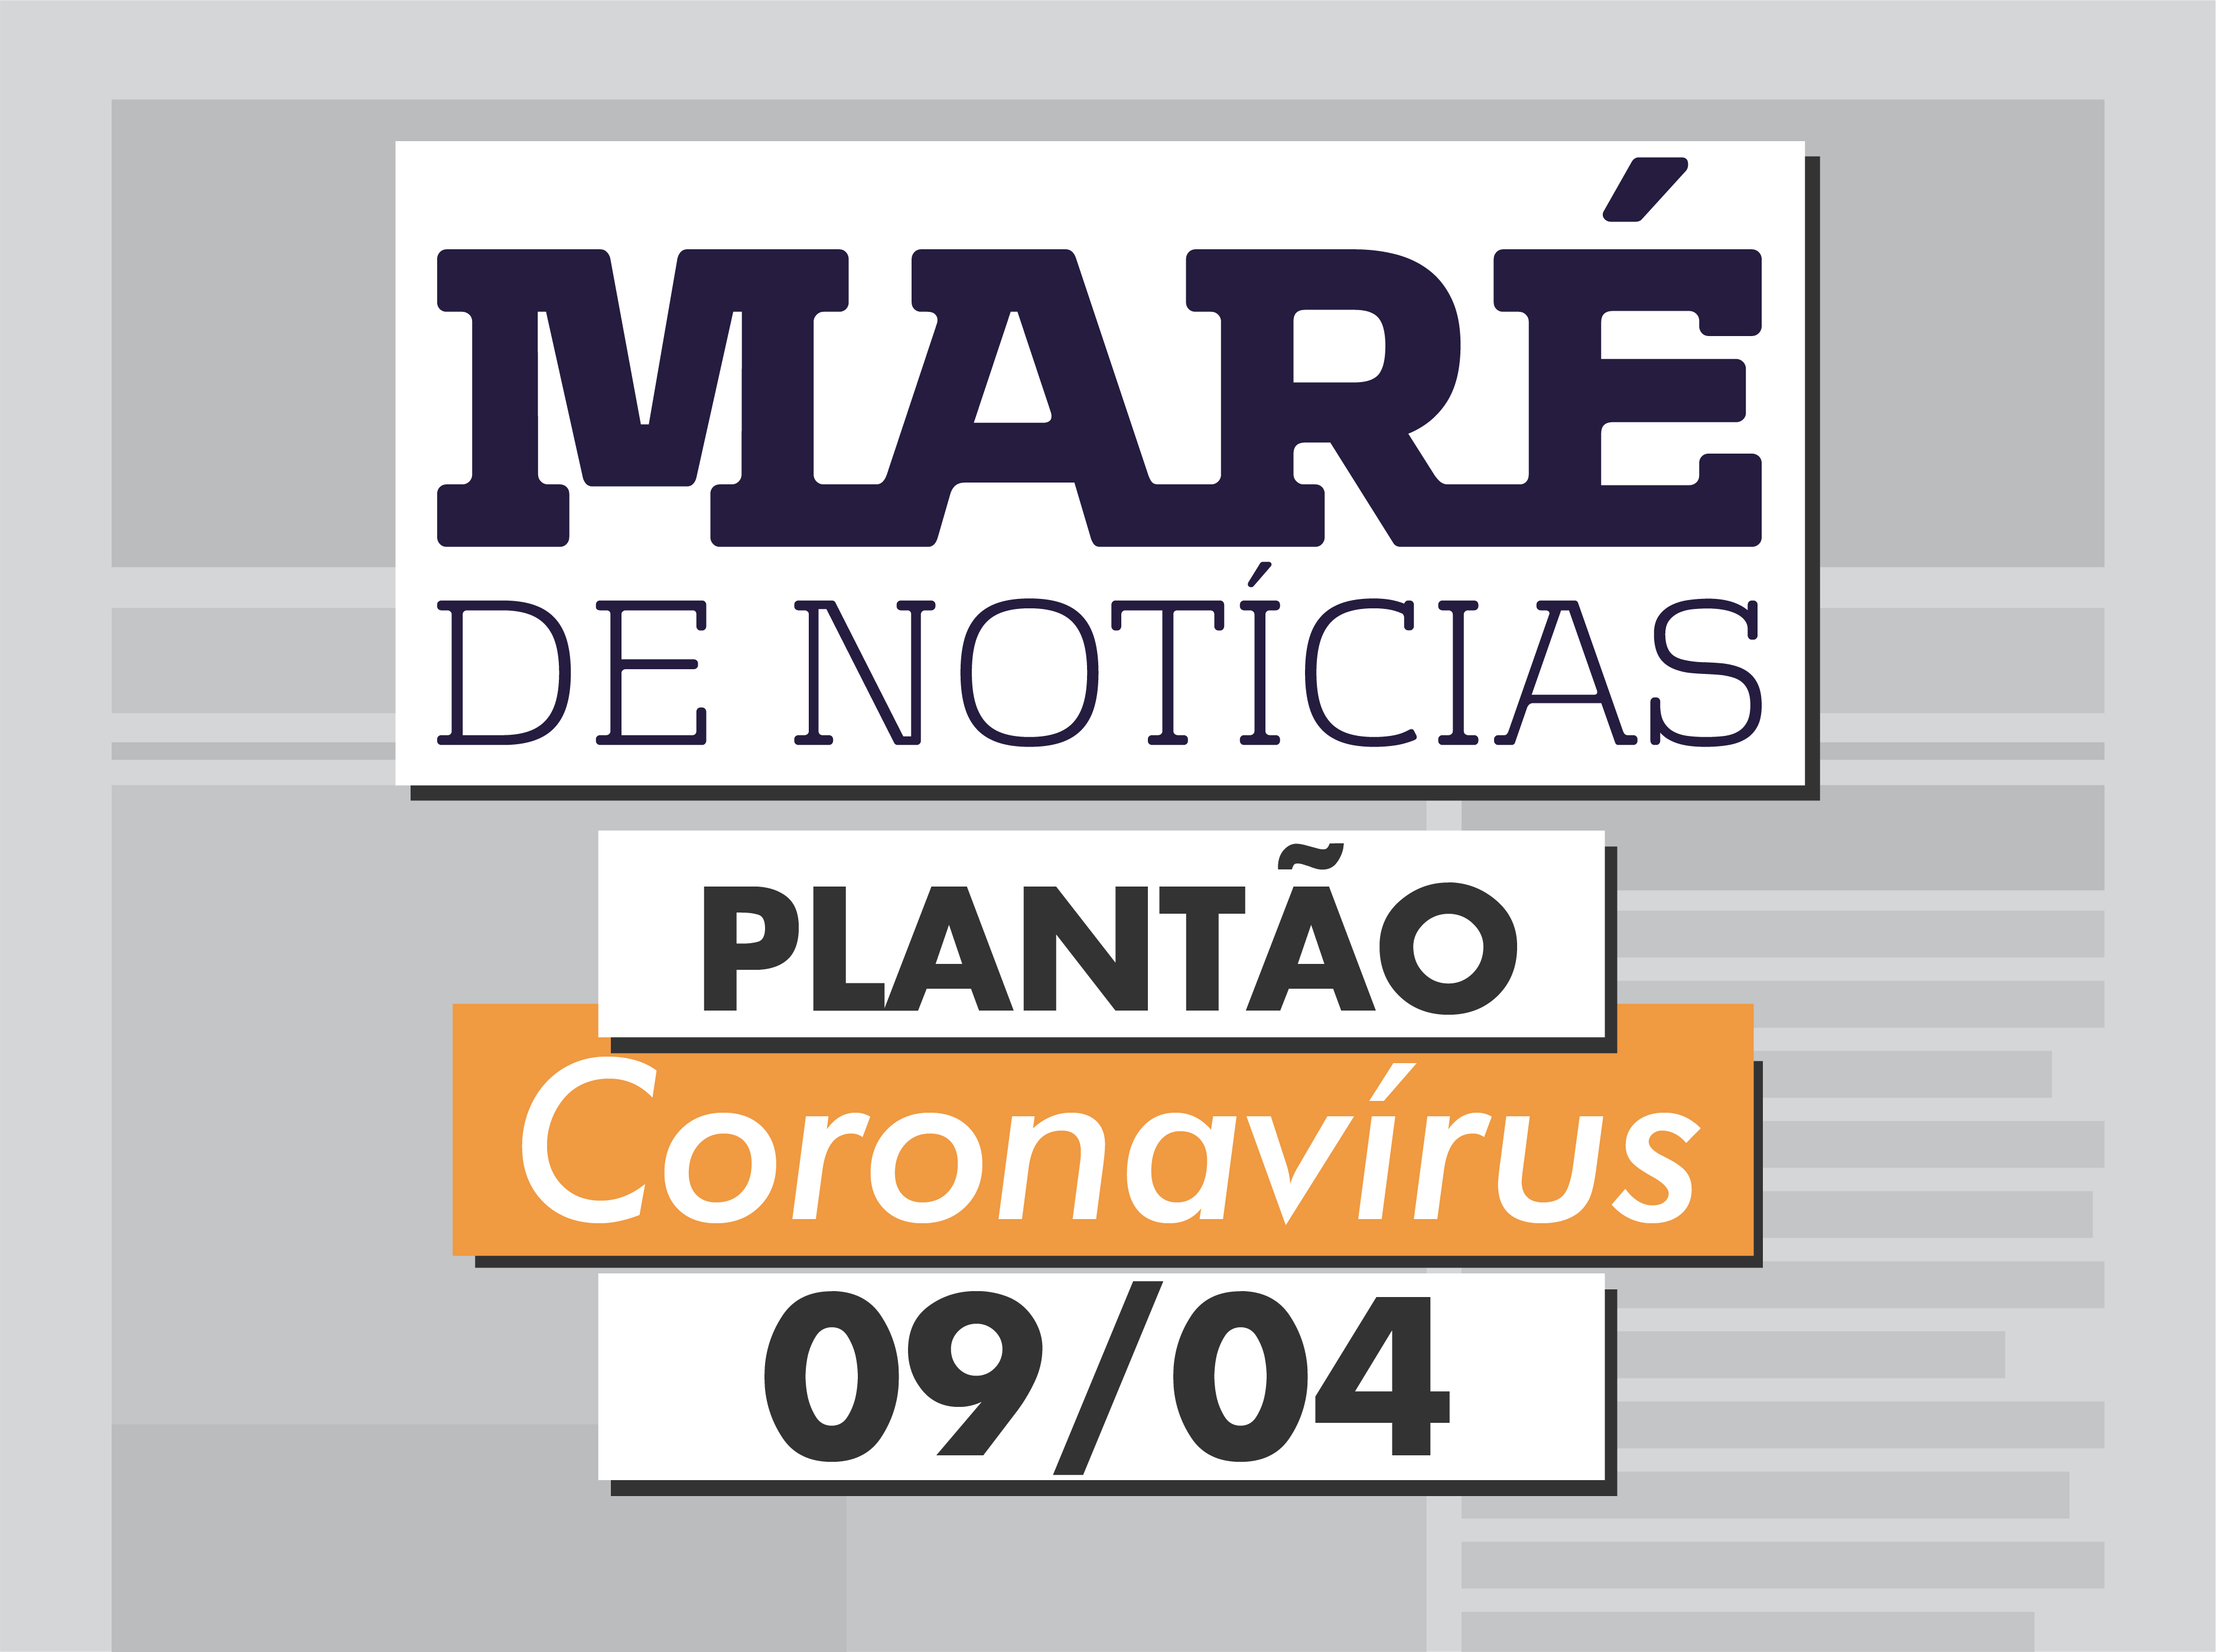  Ronda Coronavírus: confirmada a primeira morte de COVID-19 em uma das favelas da Maré